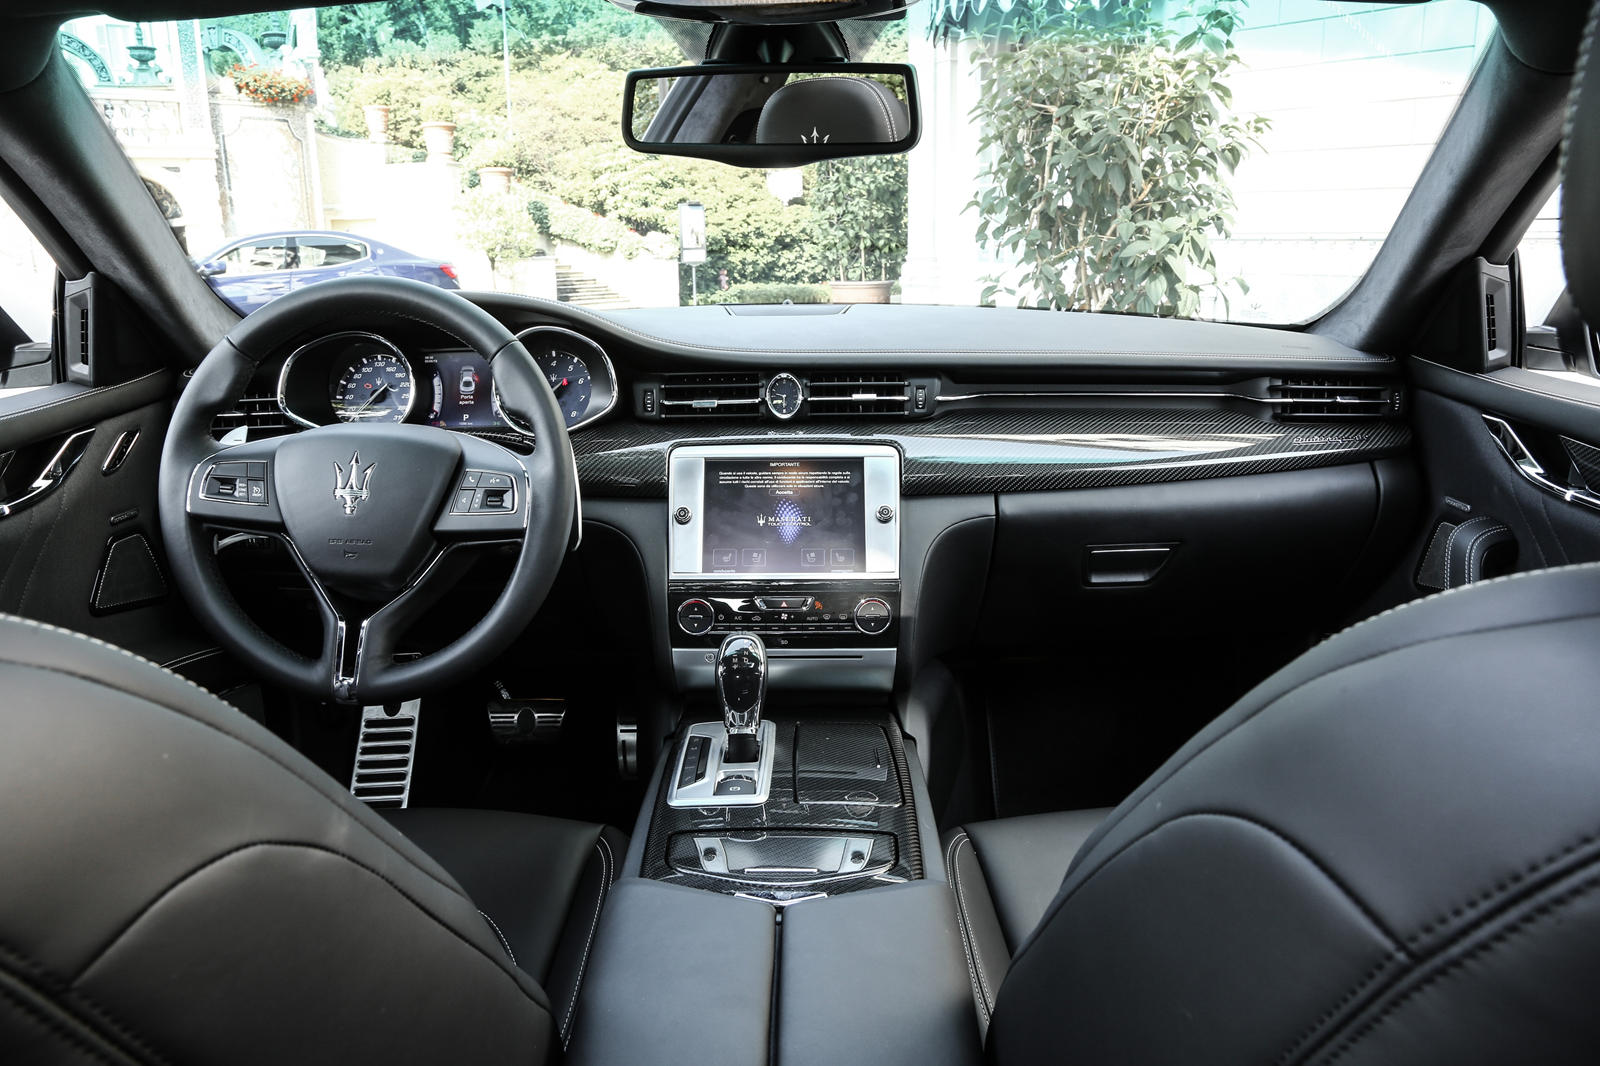 2015 Maserati Quattroporte Dashboard